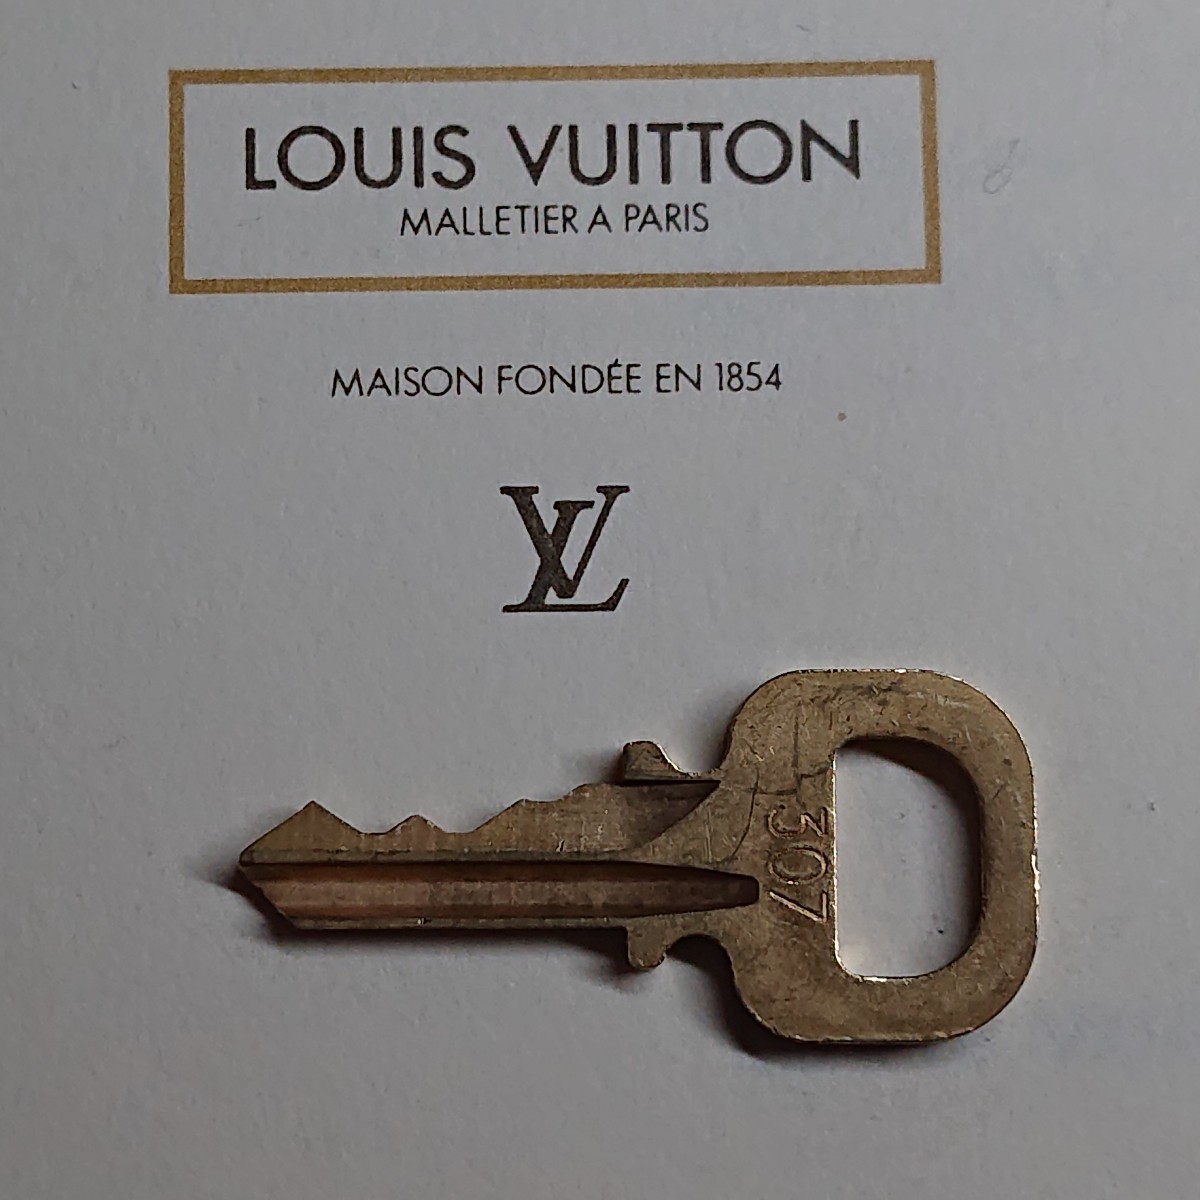 Louis Vuitton 307番 南京錠 鍵 ルイヴィトン ゴールド 解錠 キー  パドロック  カデナ スペアキー